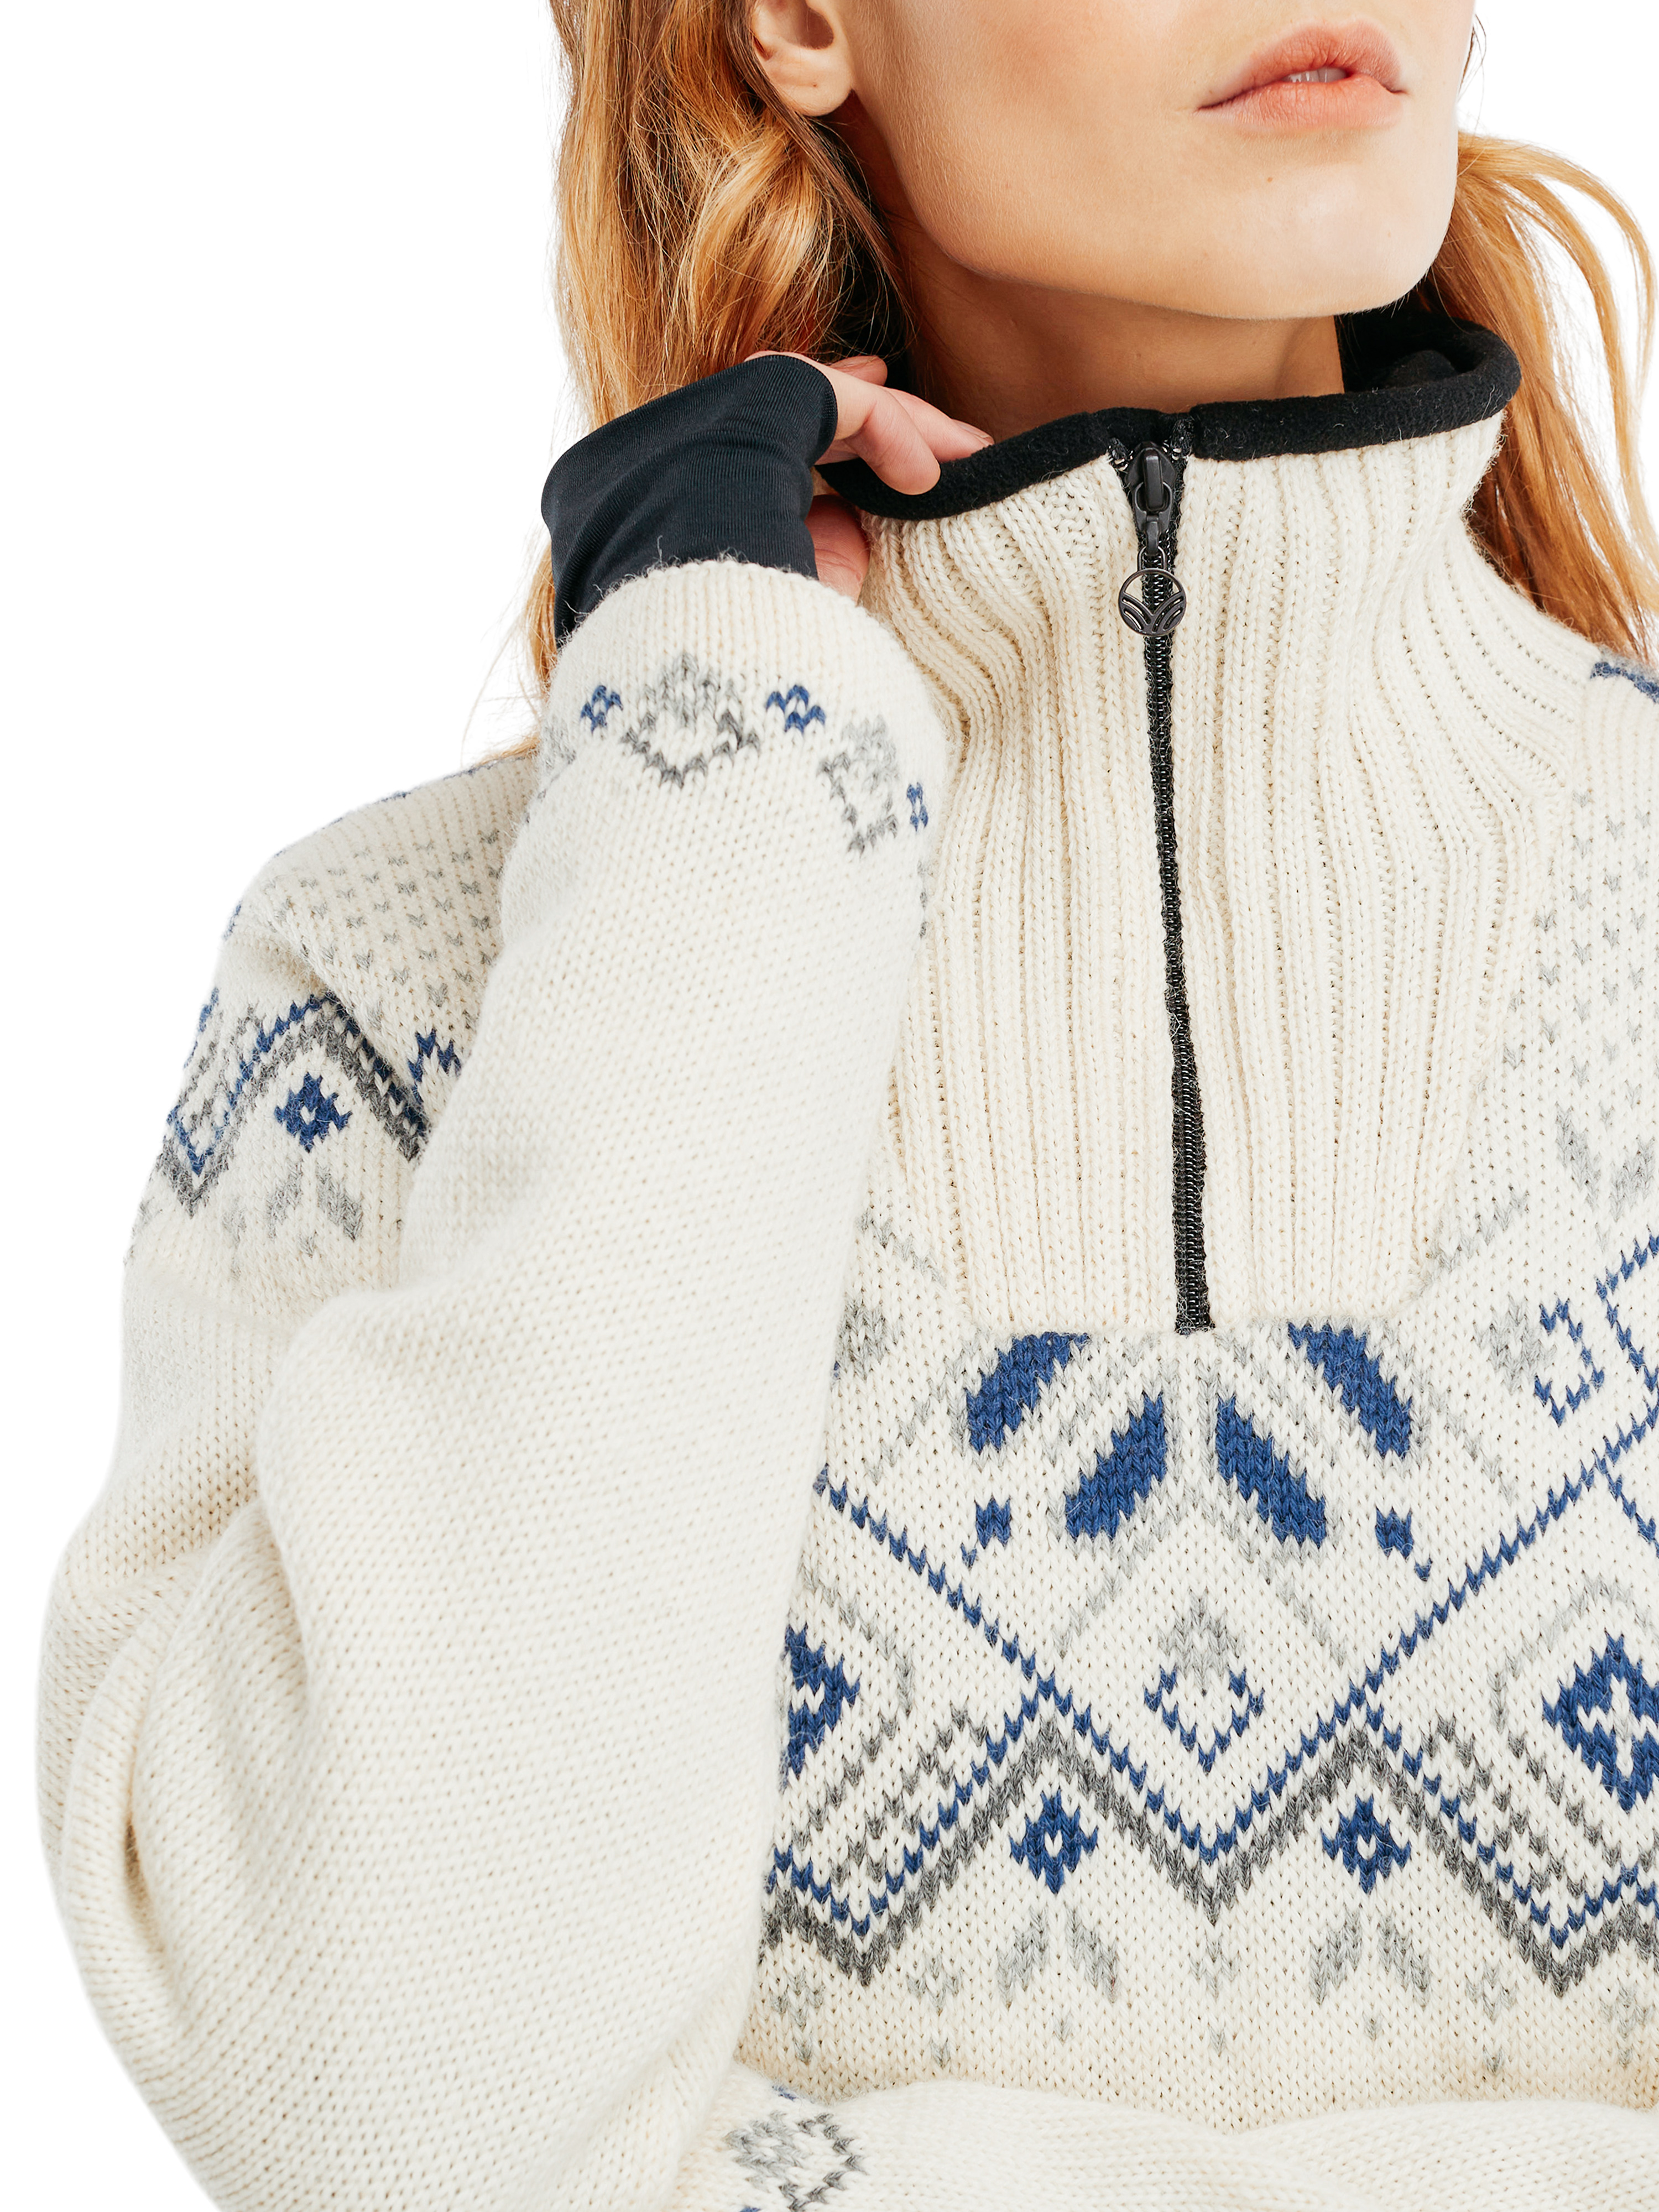 Fongen Weatherproof Sweater - Women - Offwhite - Dale of Norway